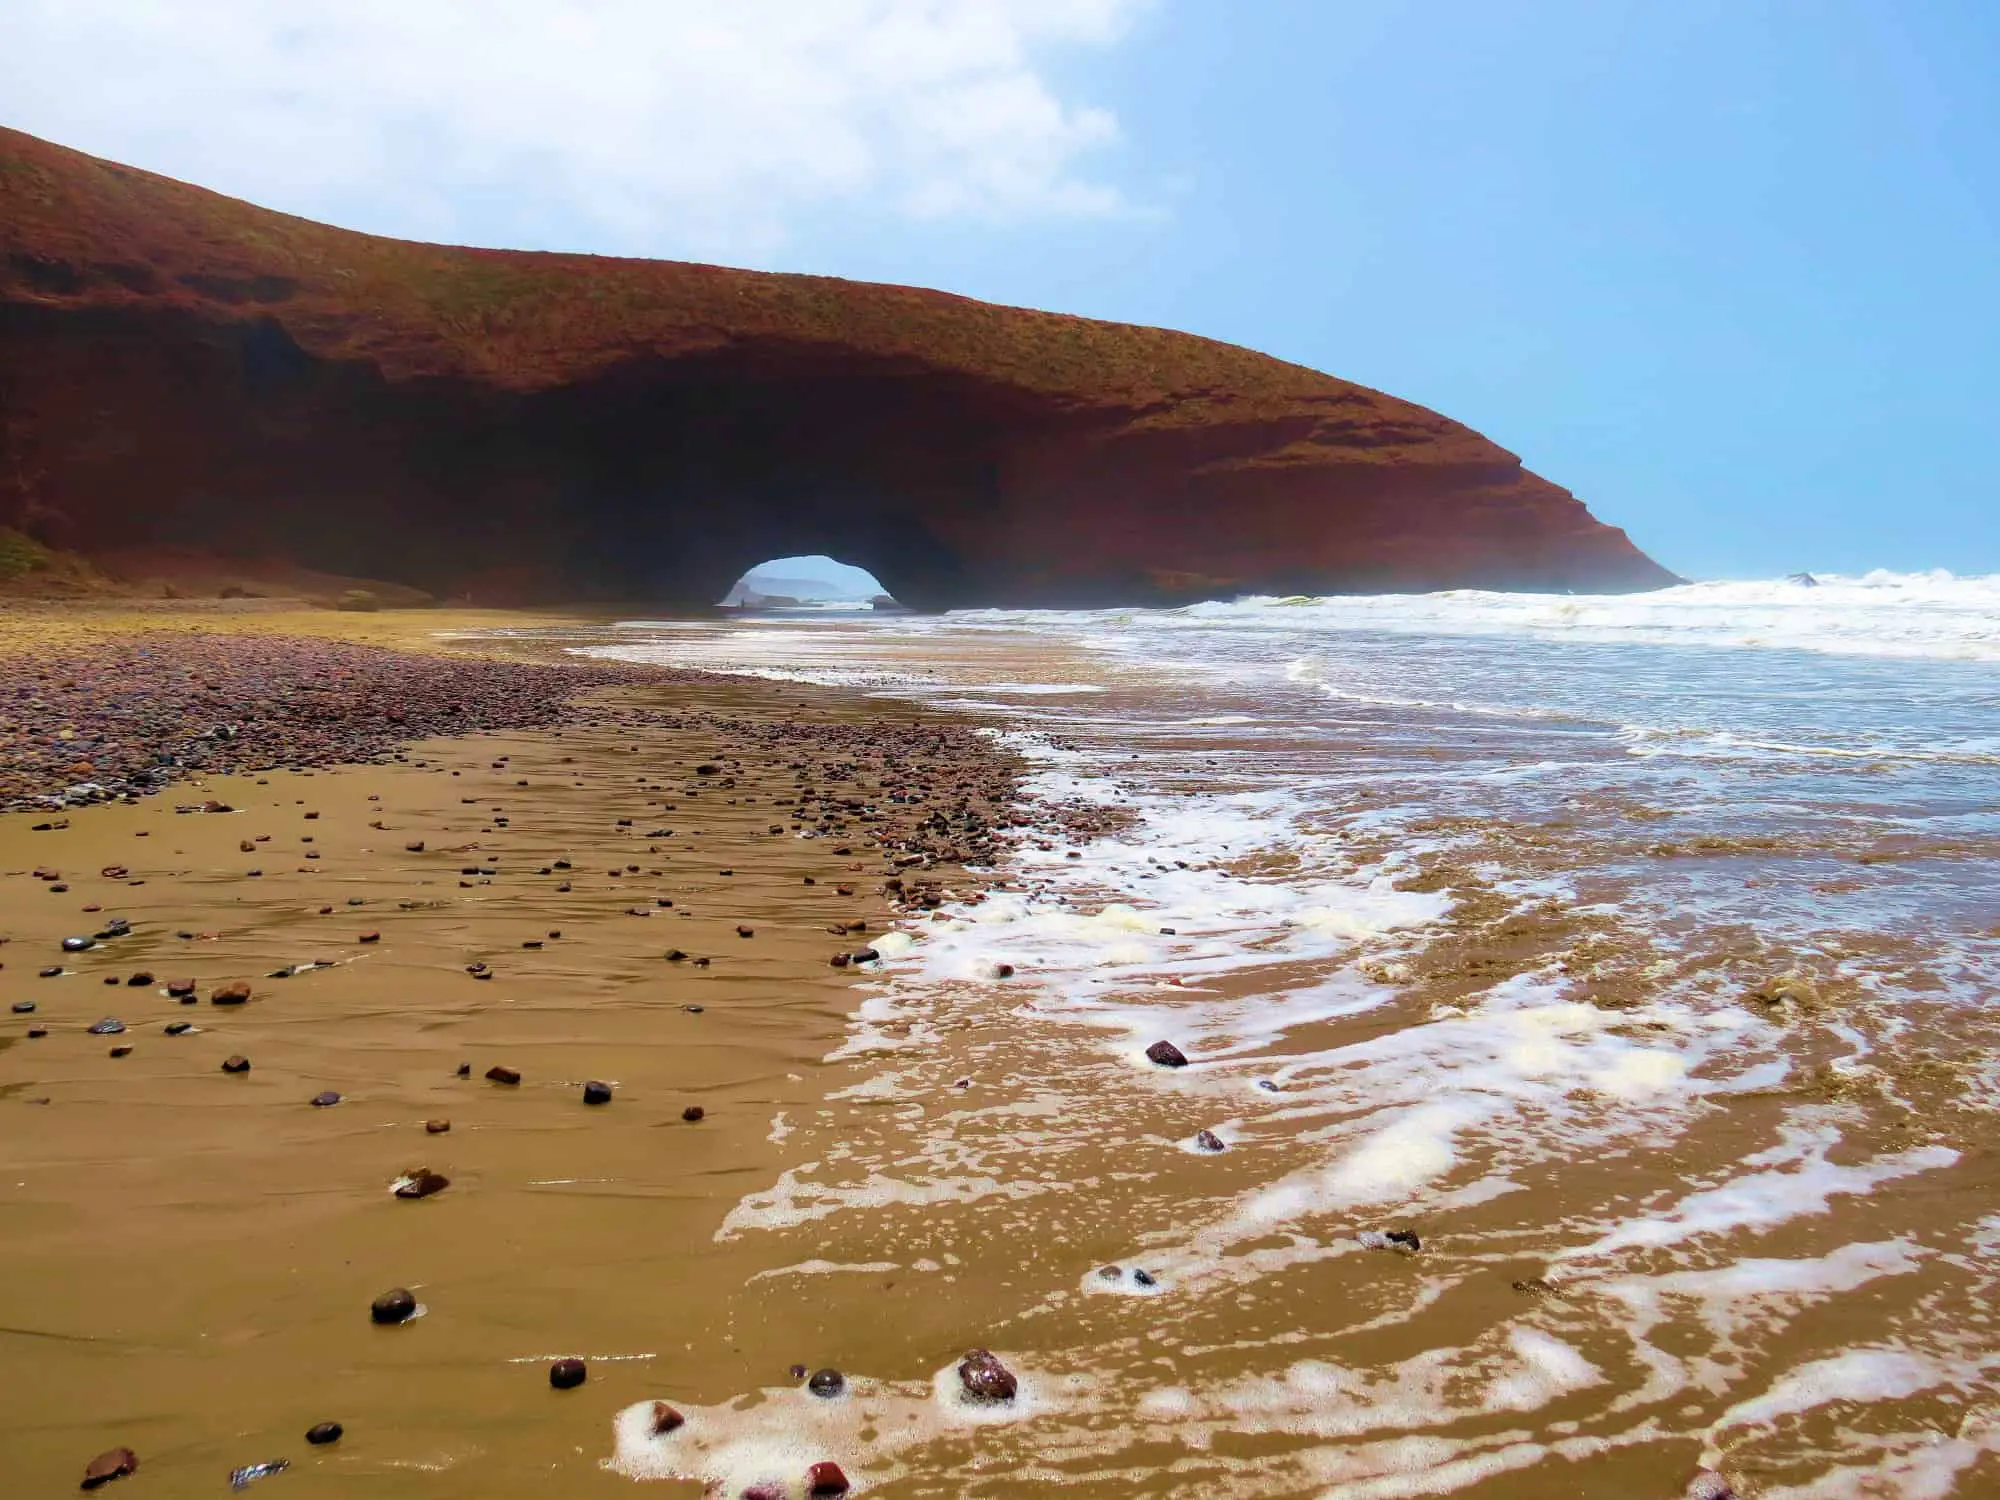 Sea arch at Legzira beach, Morocco